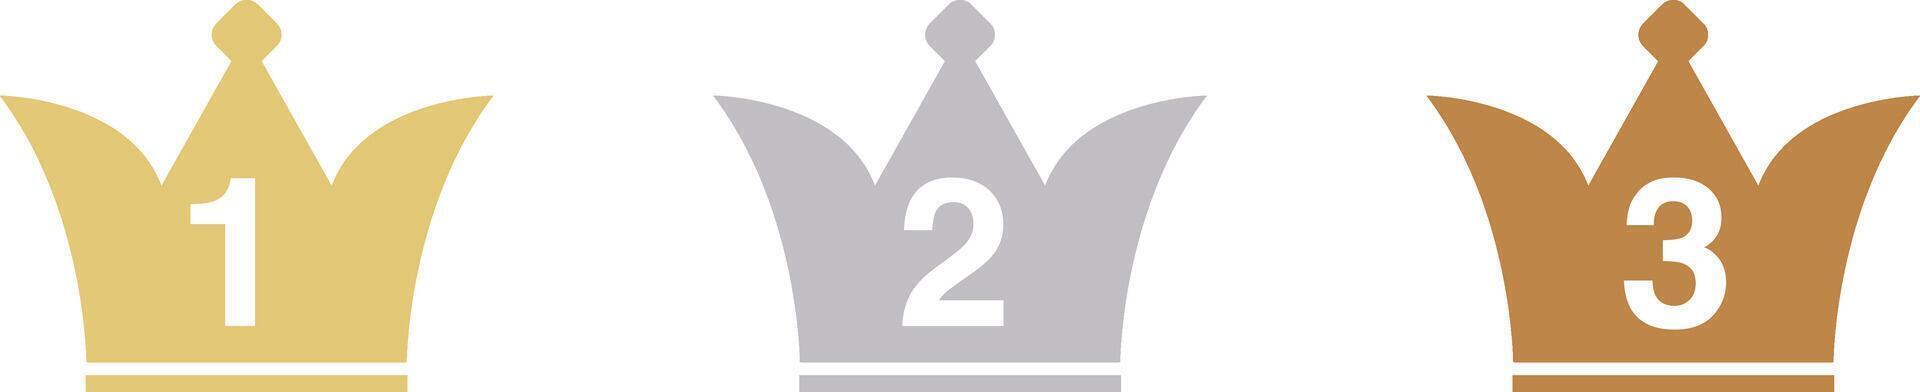 krona ikon uppsättning för ranking .tre färger guld, silver, brons vektor